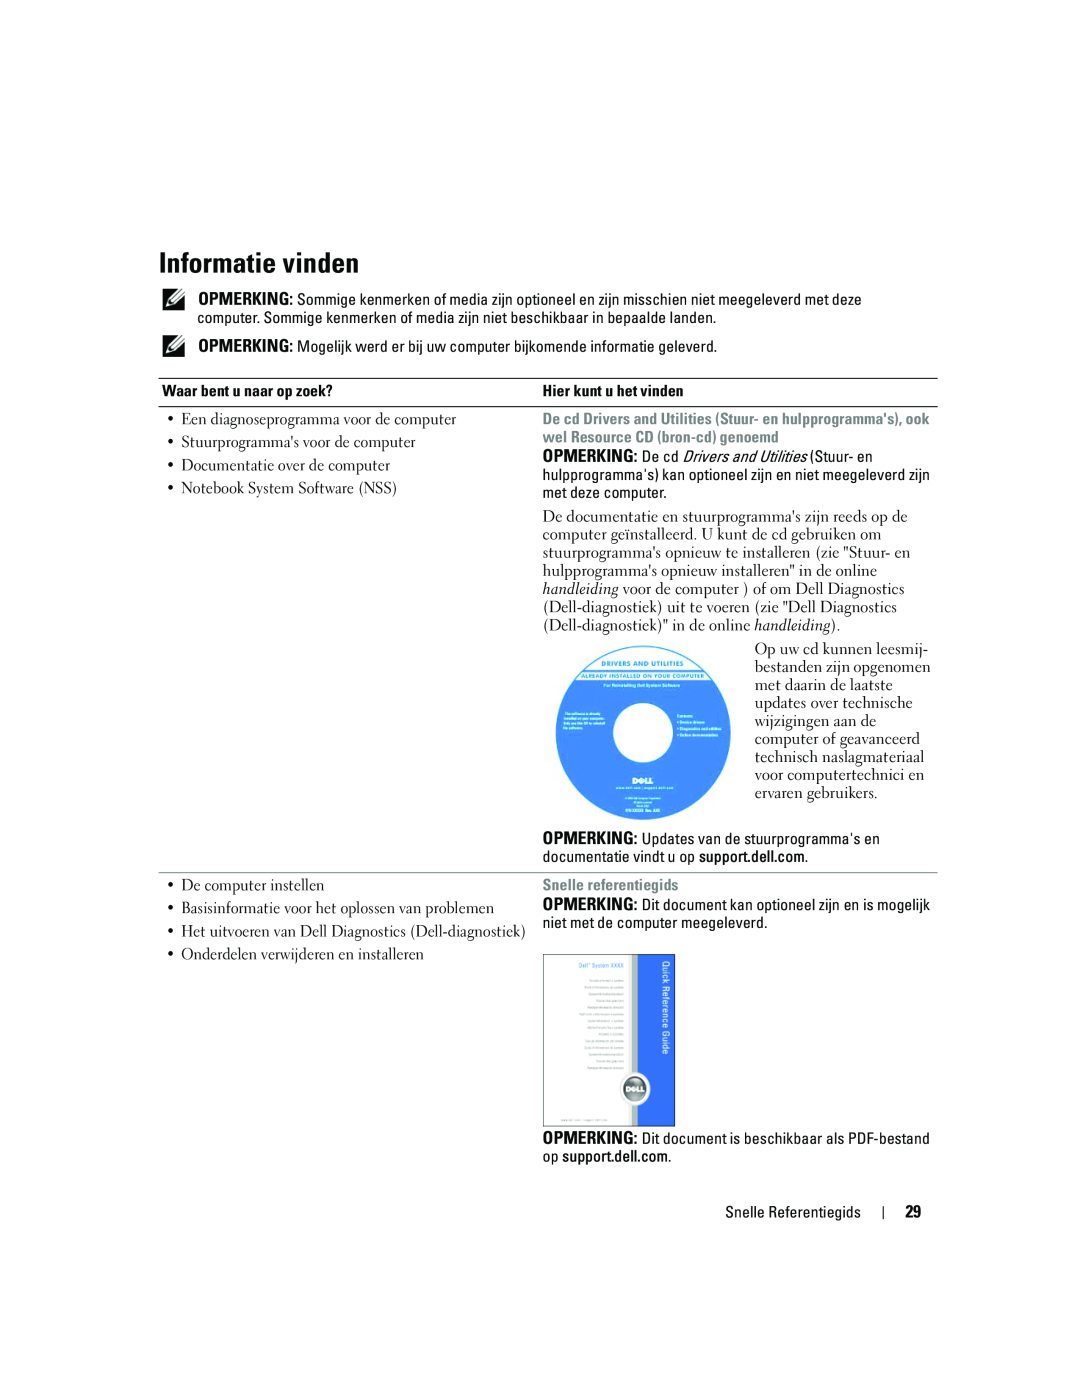 Dell ATG D620 manual Informatie vinden, wel Resource CD bron-cd genoemd, Snelle referentiegids 